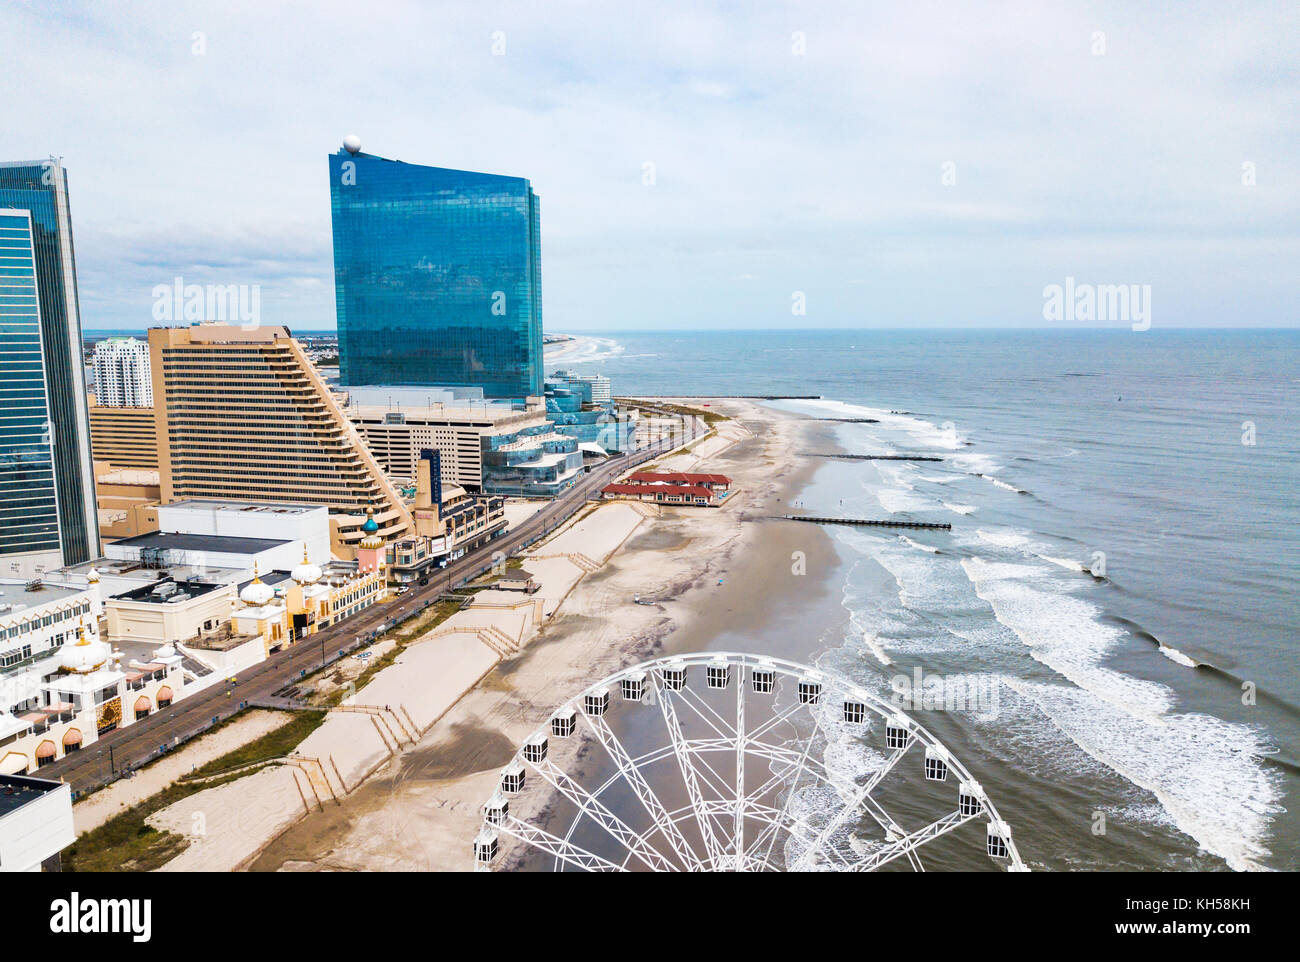 Atlantic City linea di galleggiamento vista aerea. AC è una città turistica nel New Jersey e famosa per i suoi casinò, passerelle e spiagge Foto Stock